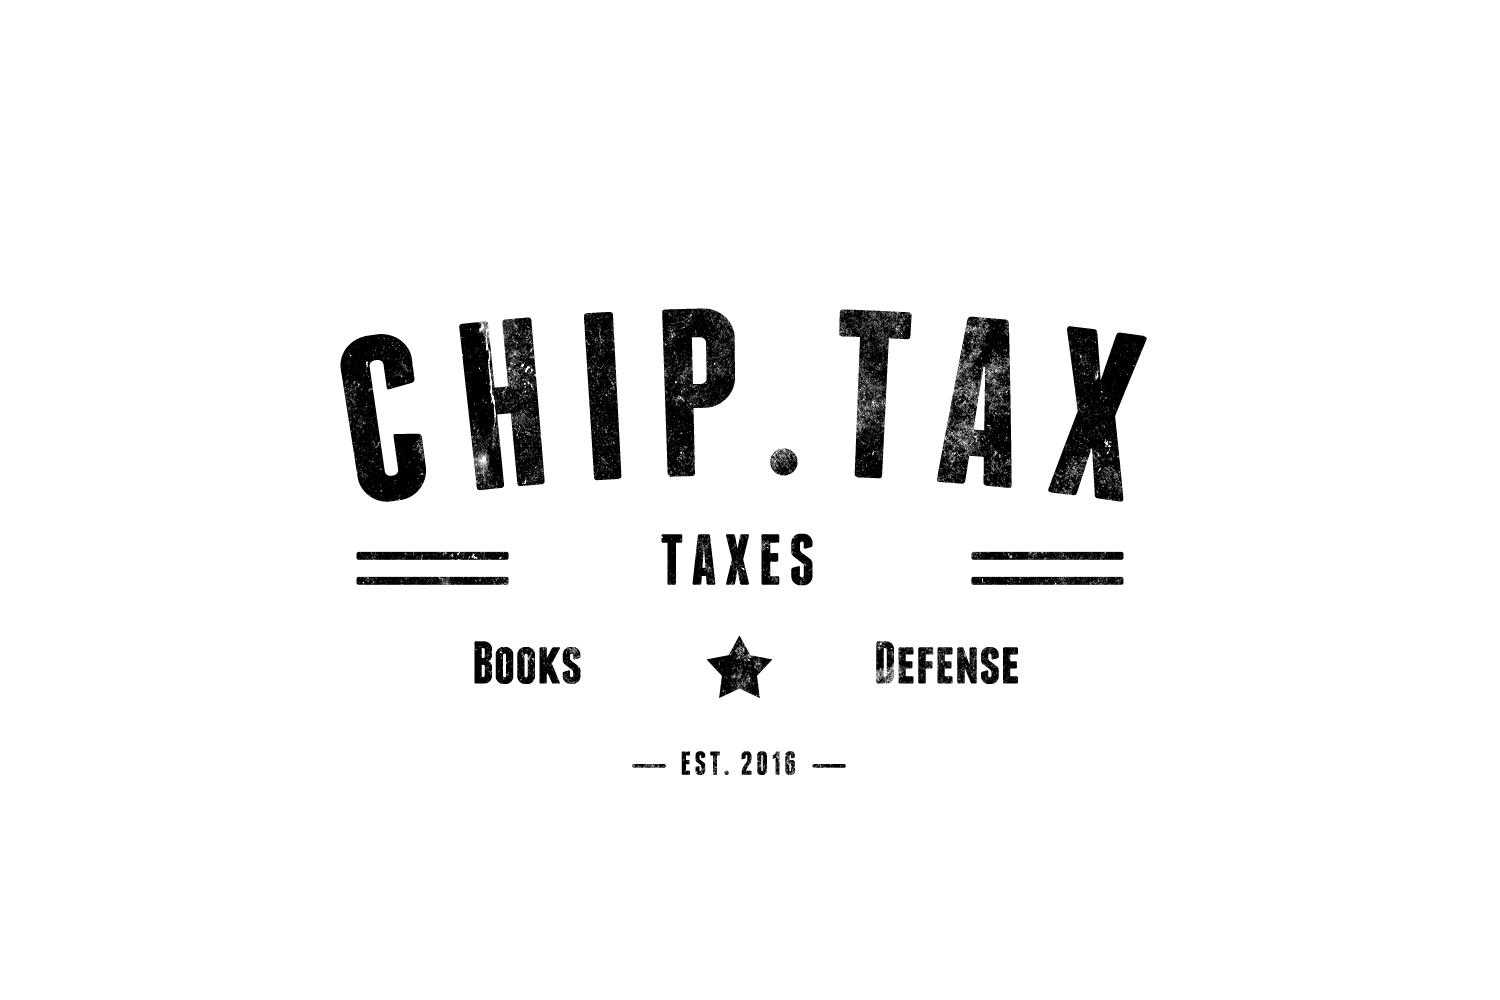 Chip.tax